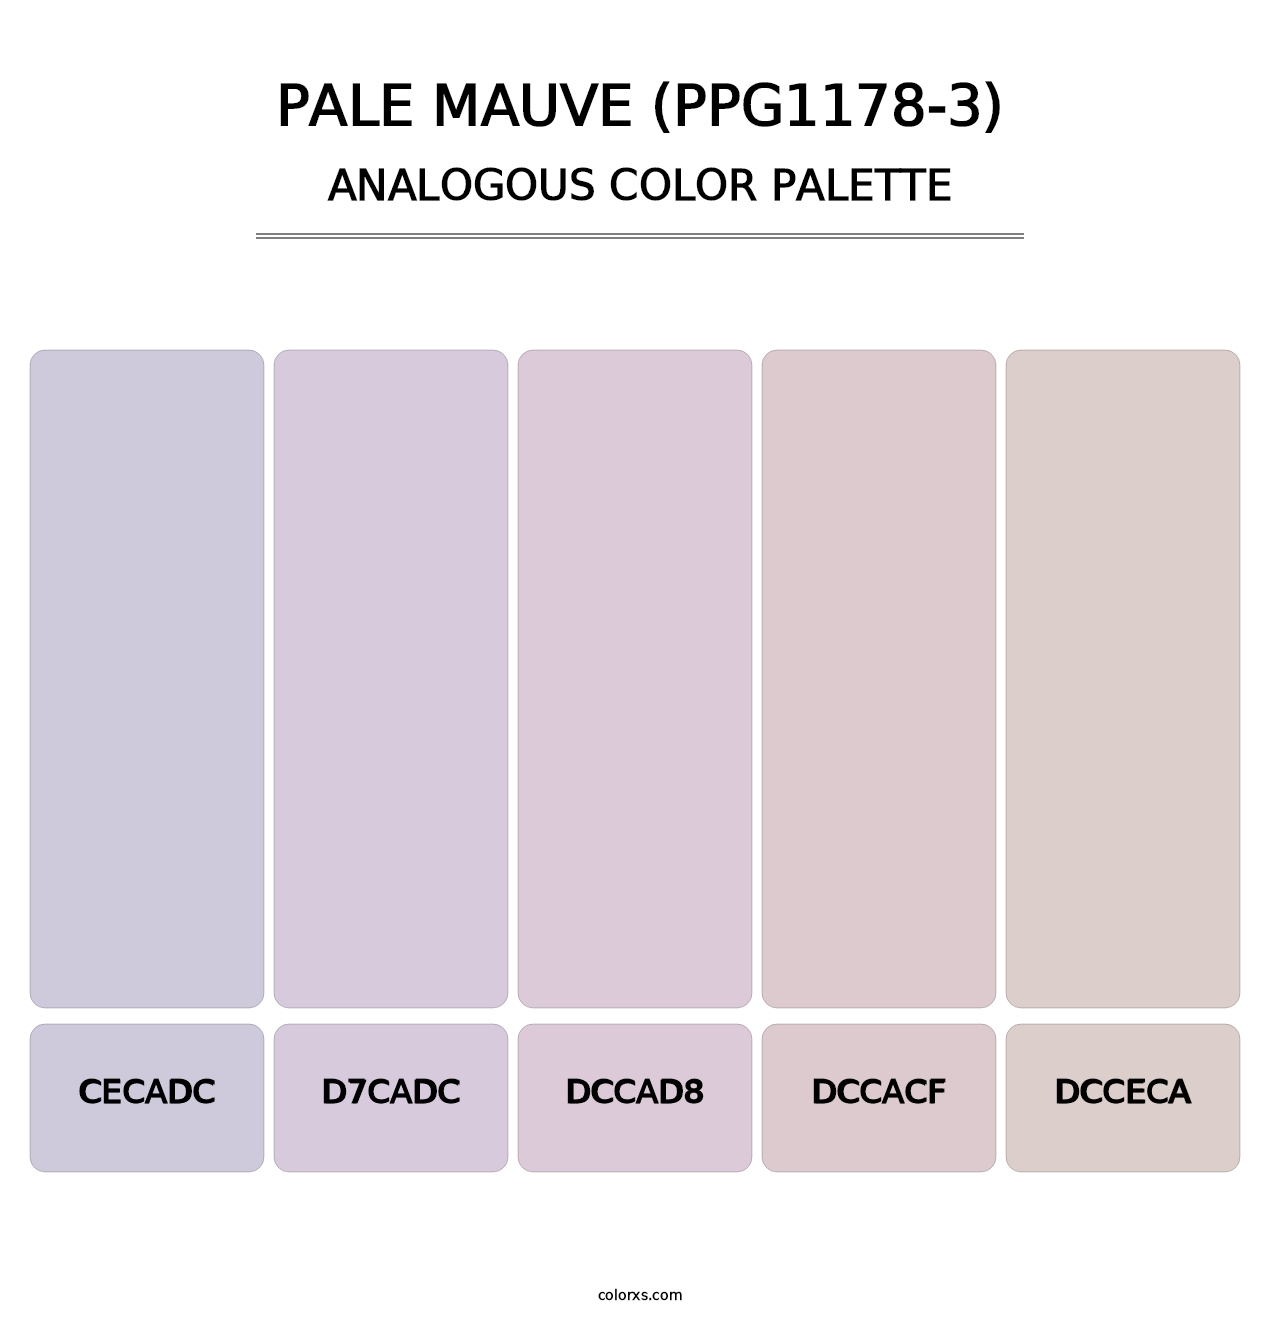 Pale Mauve (PPG1178-3) - Analogous Color Palette